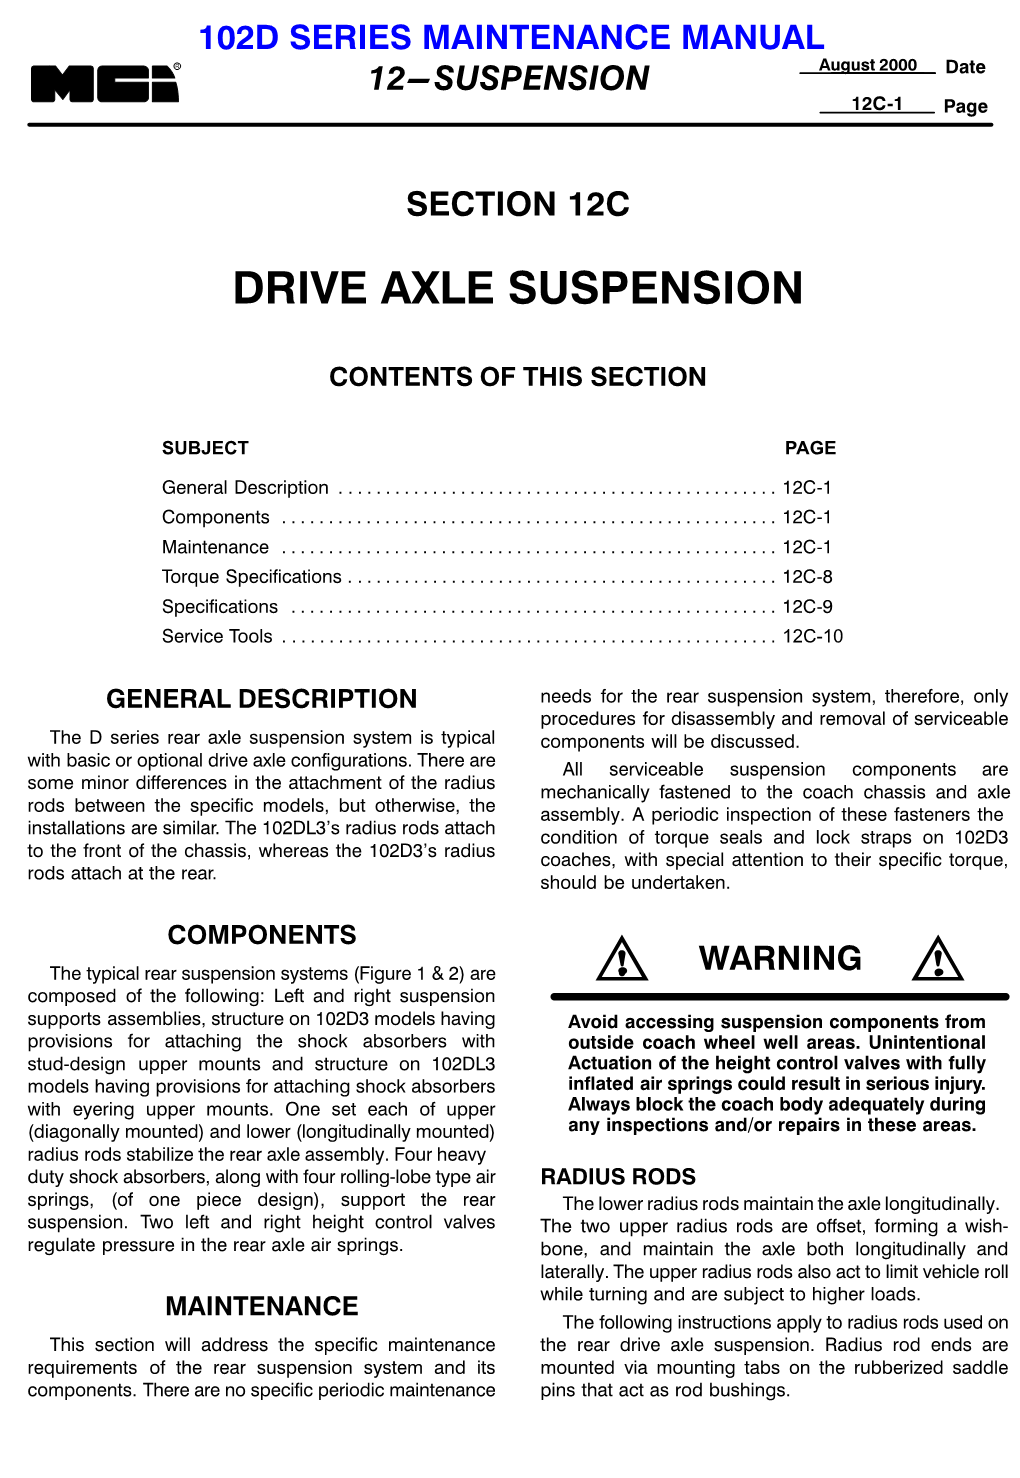 Drive Axle Suspension, 12C 1